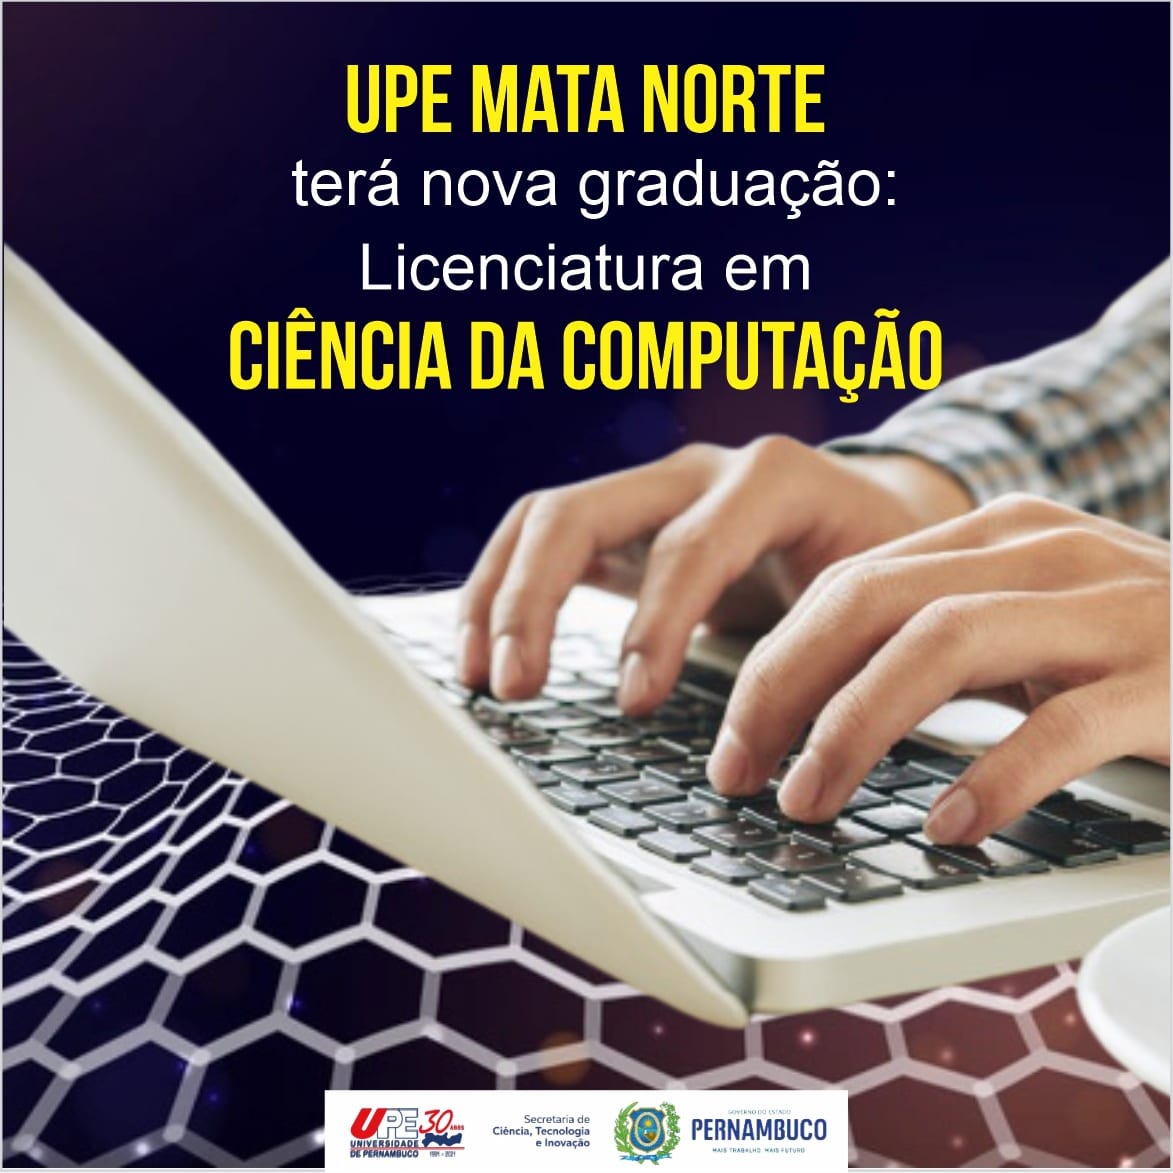 Campus Mata Norte da UPE divulga vencedores de torneio de xadrez que  integra projeto de extensão do curso de Matemática - Universidade de  Pernambuco